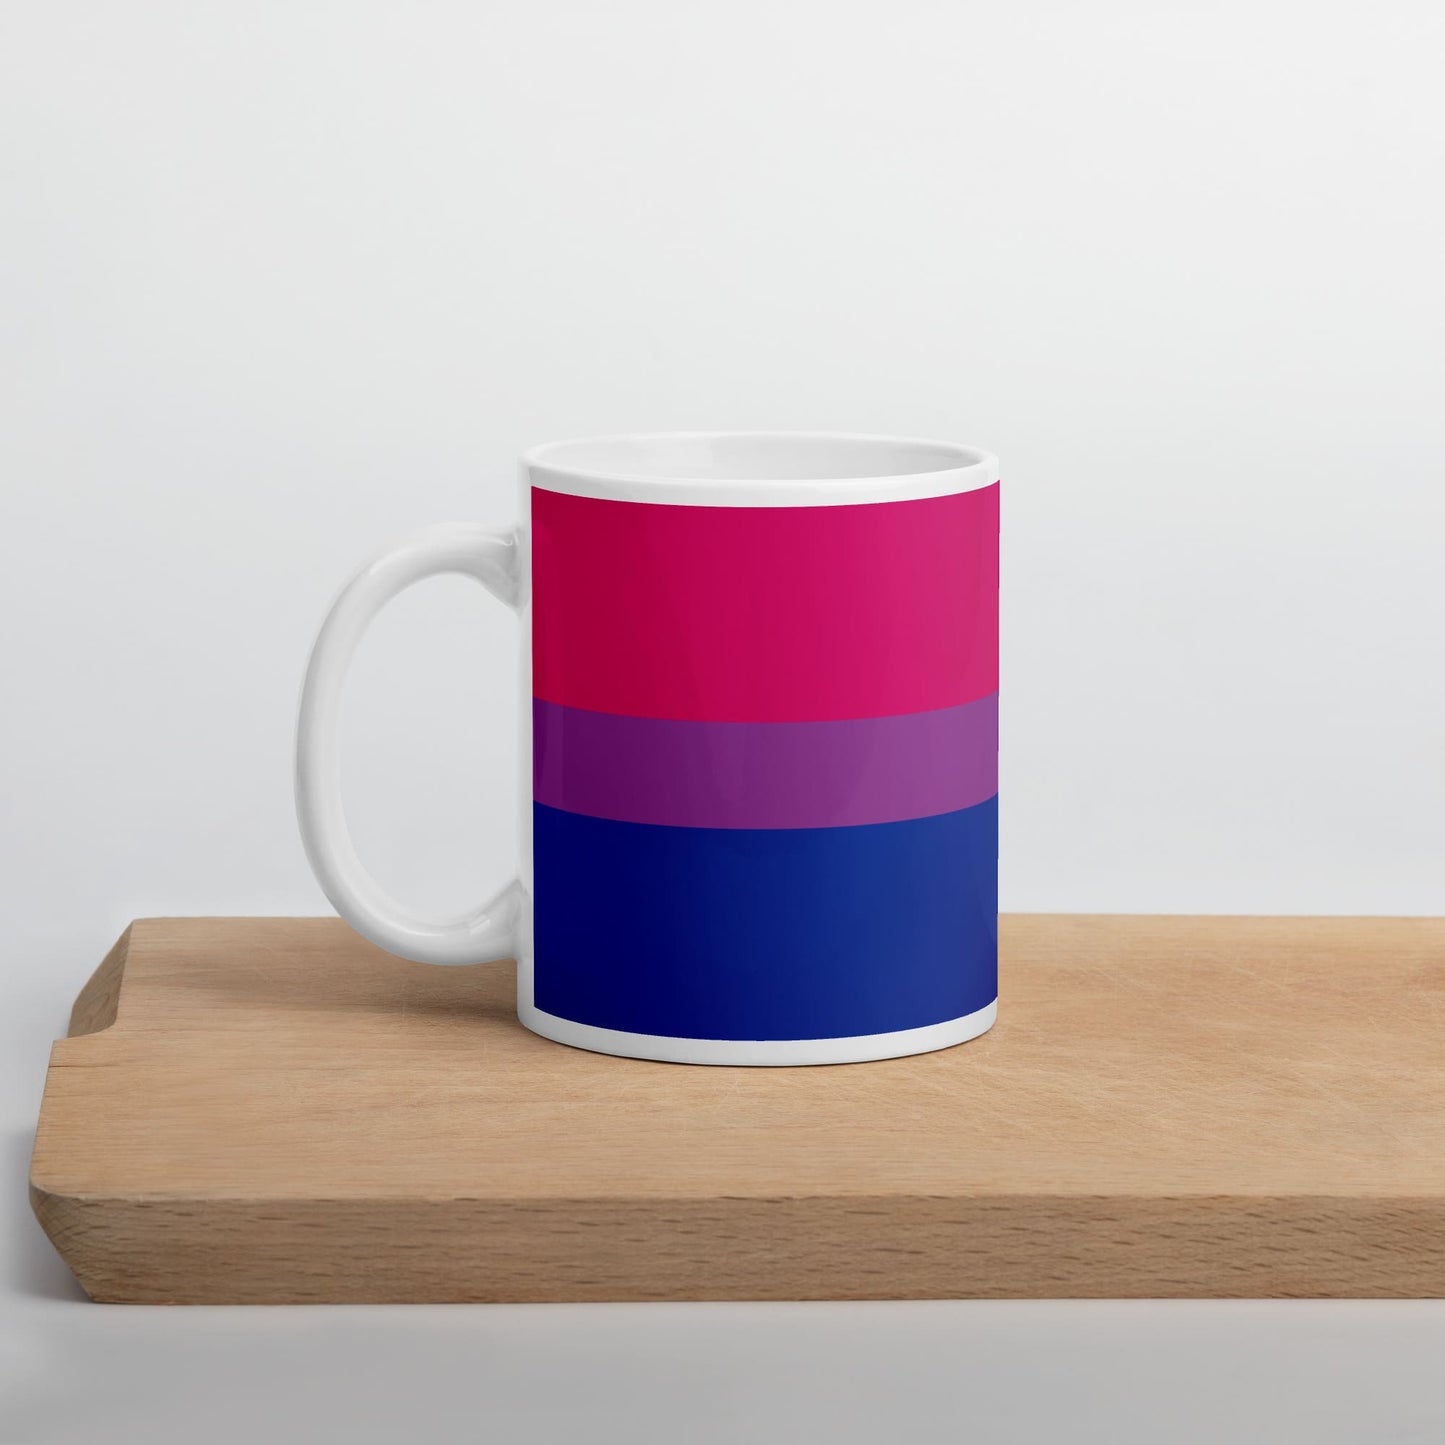 bisexual coffee mug on table